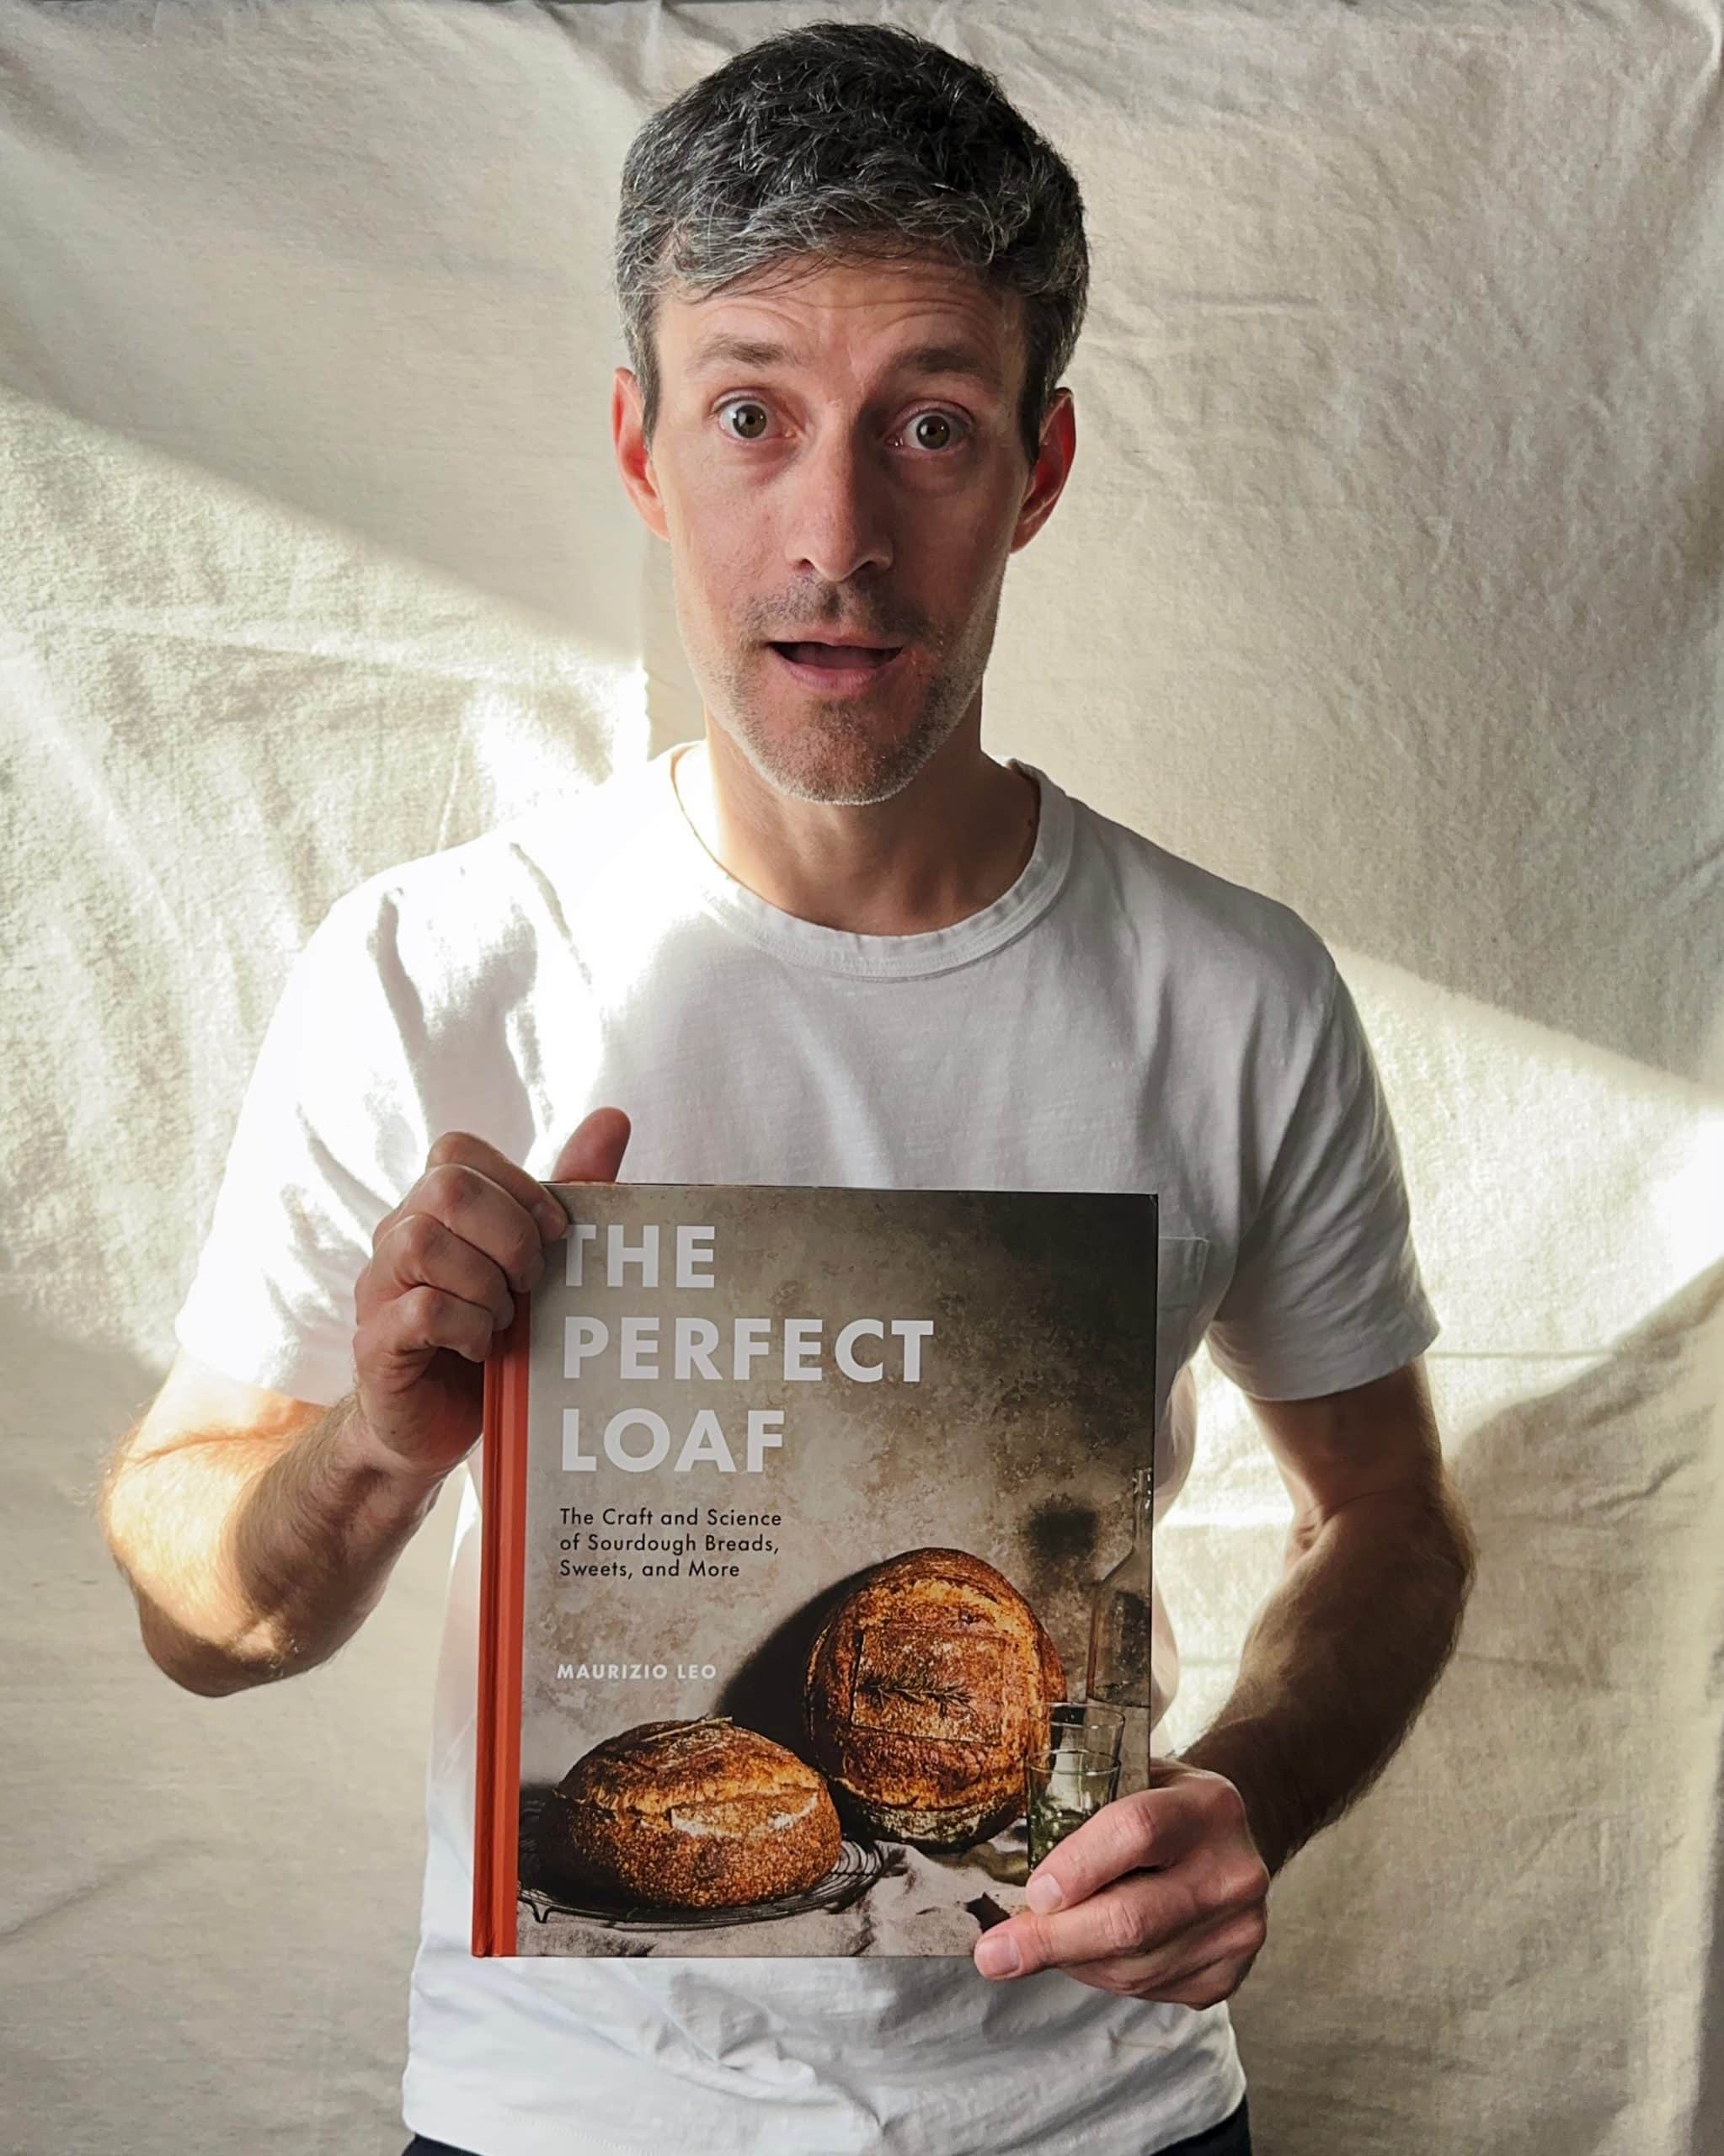 Maurizio Leo and his sourdough cookbook